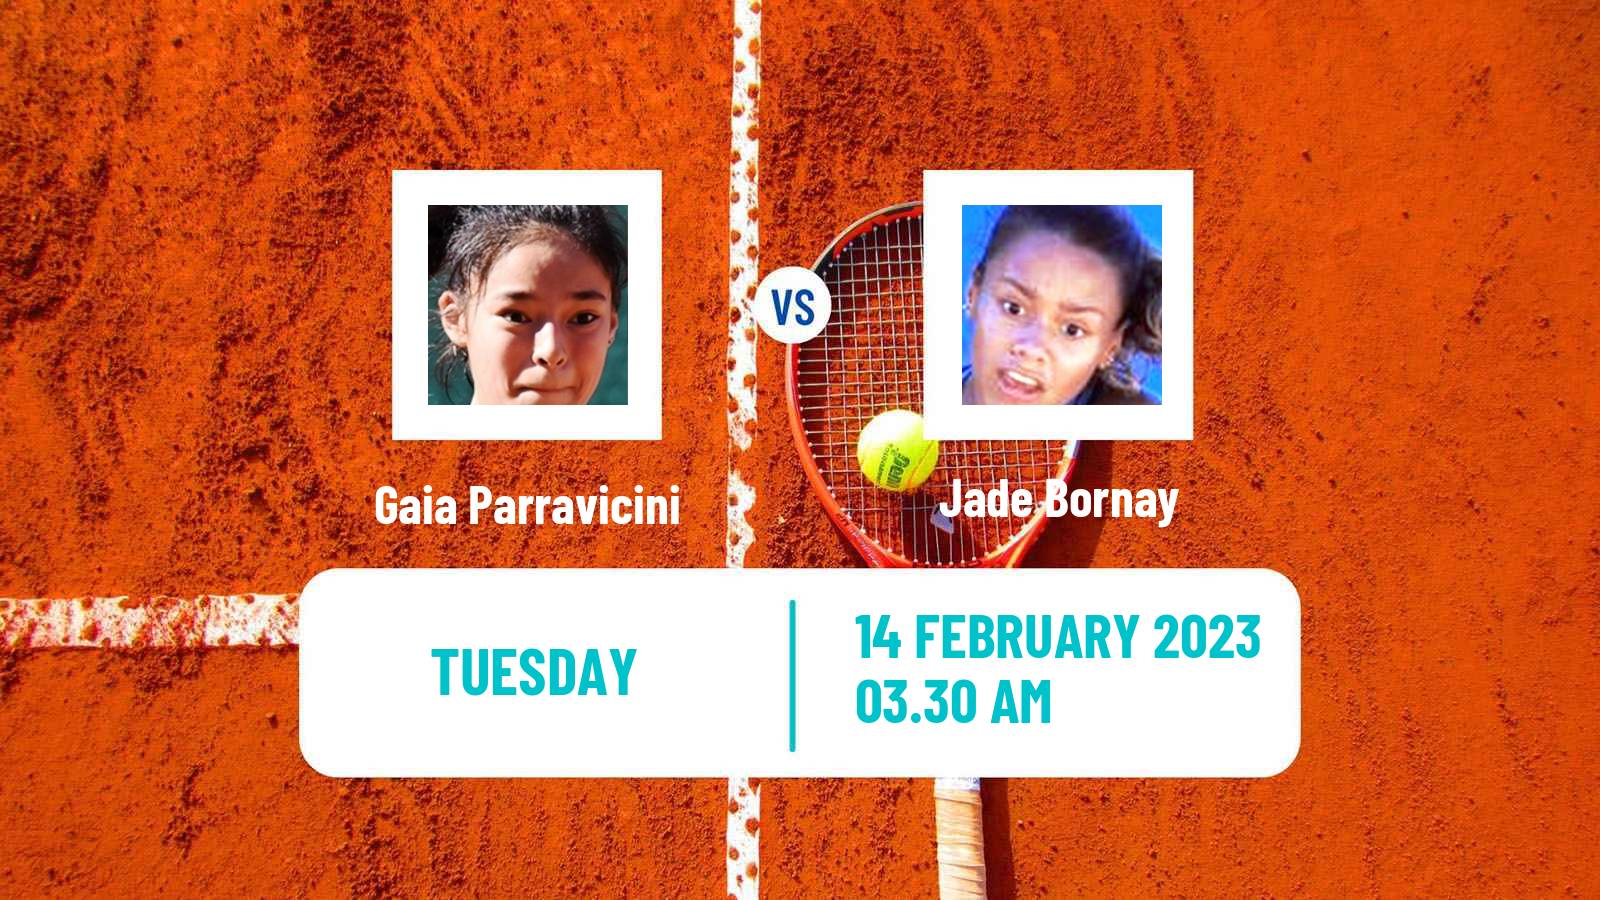 Tennis ITF Tournaments Gaia Parravicini - Jade Bornay